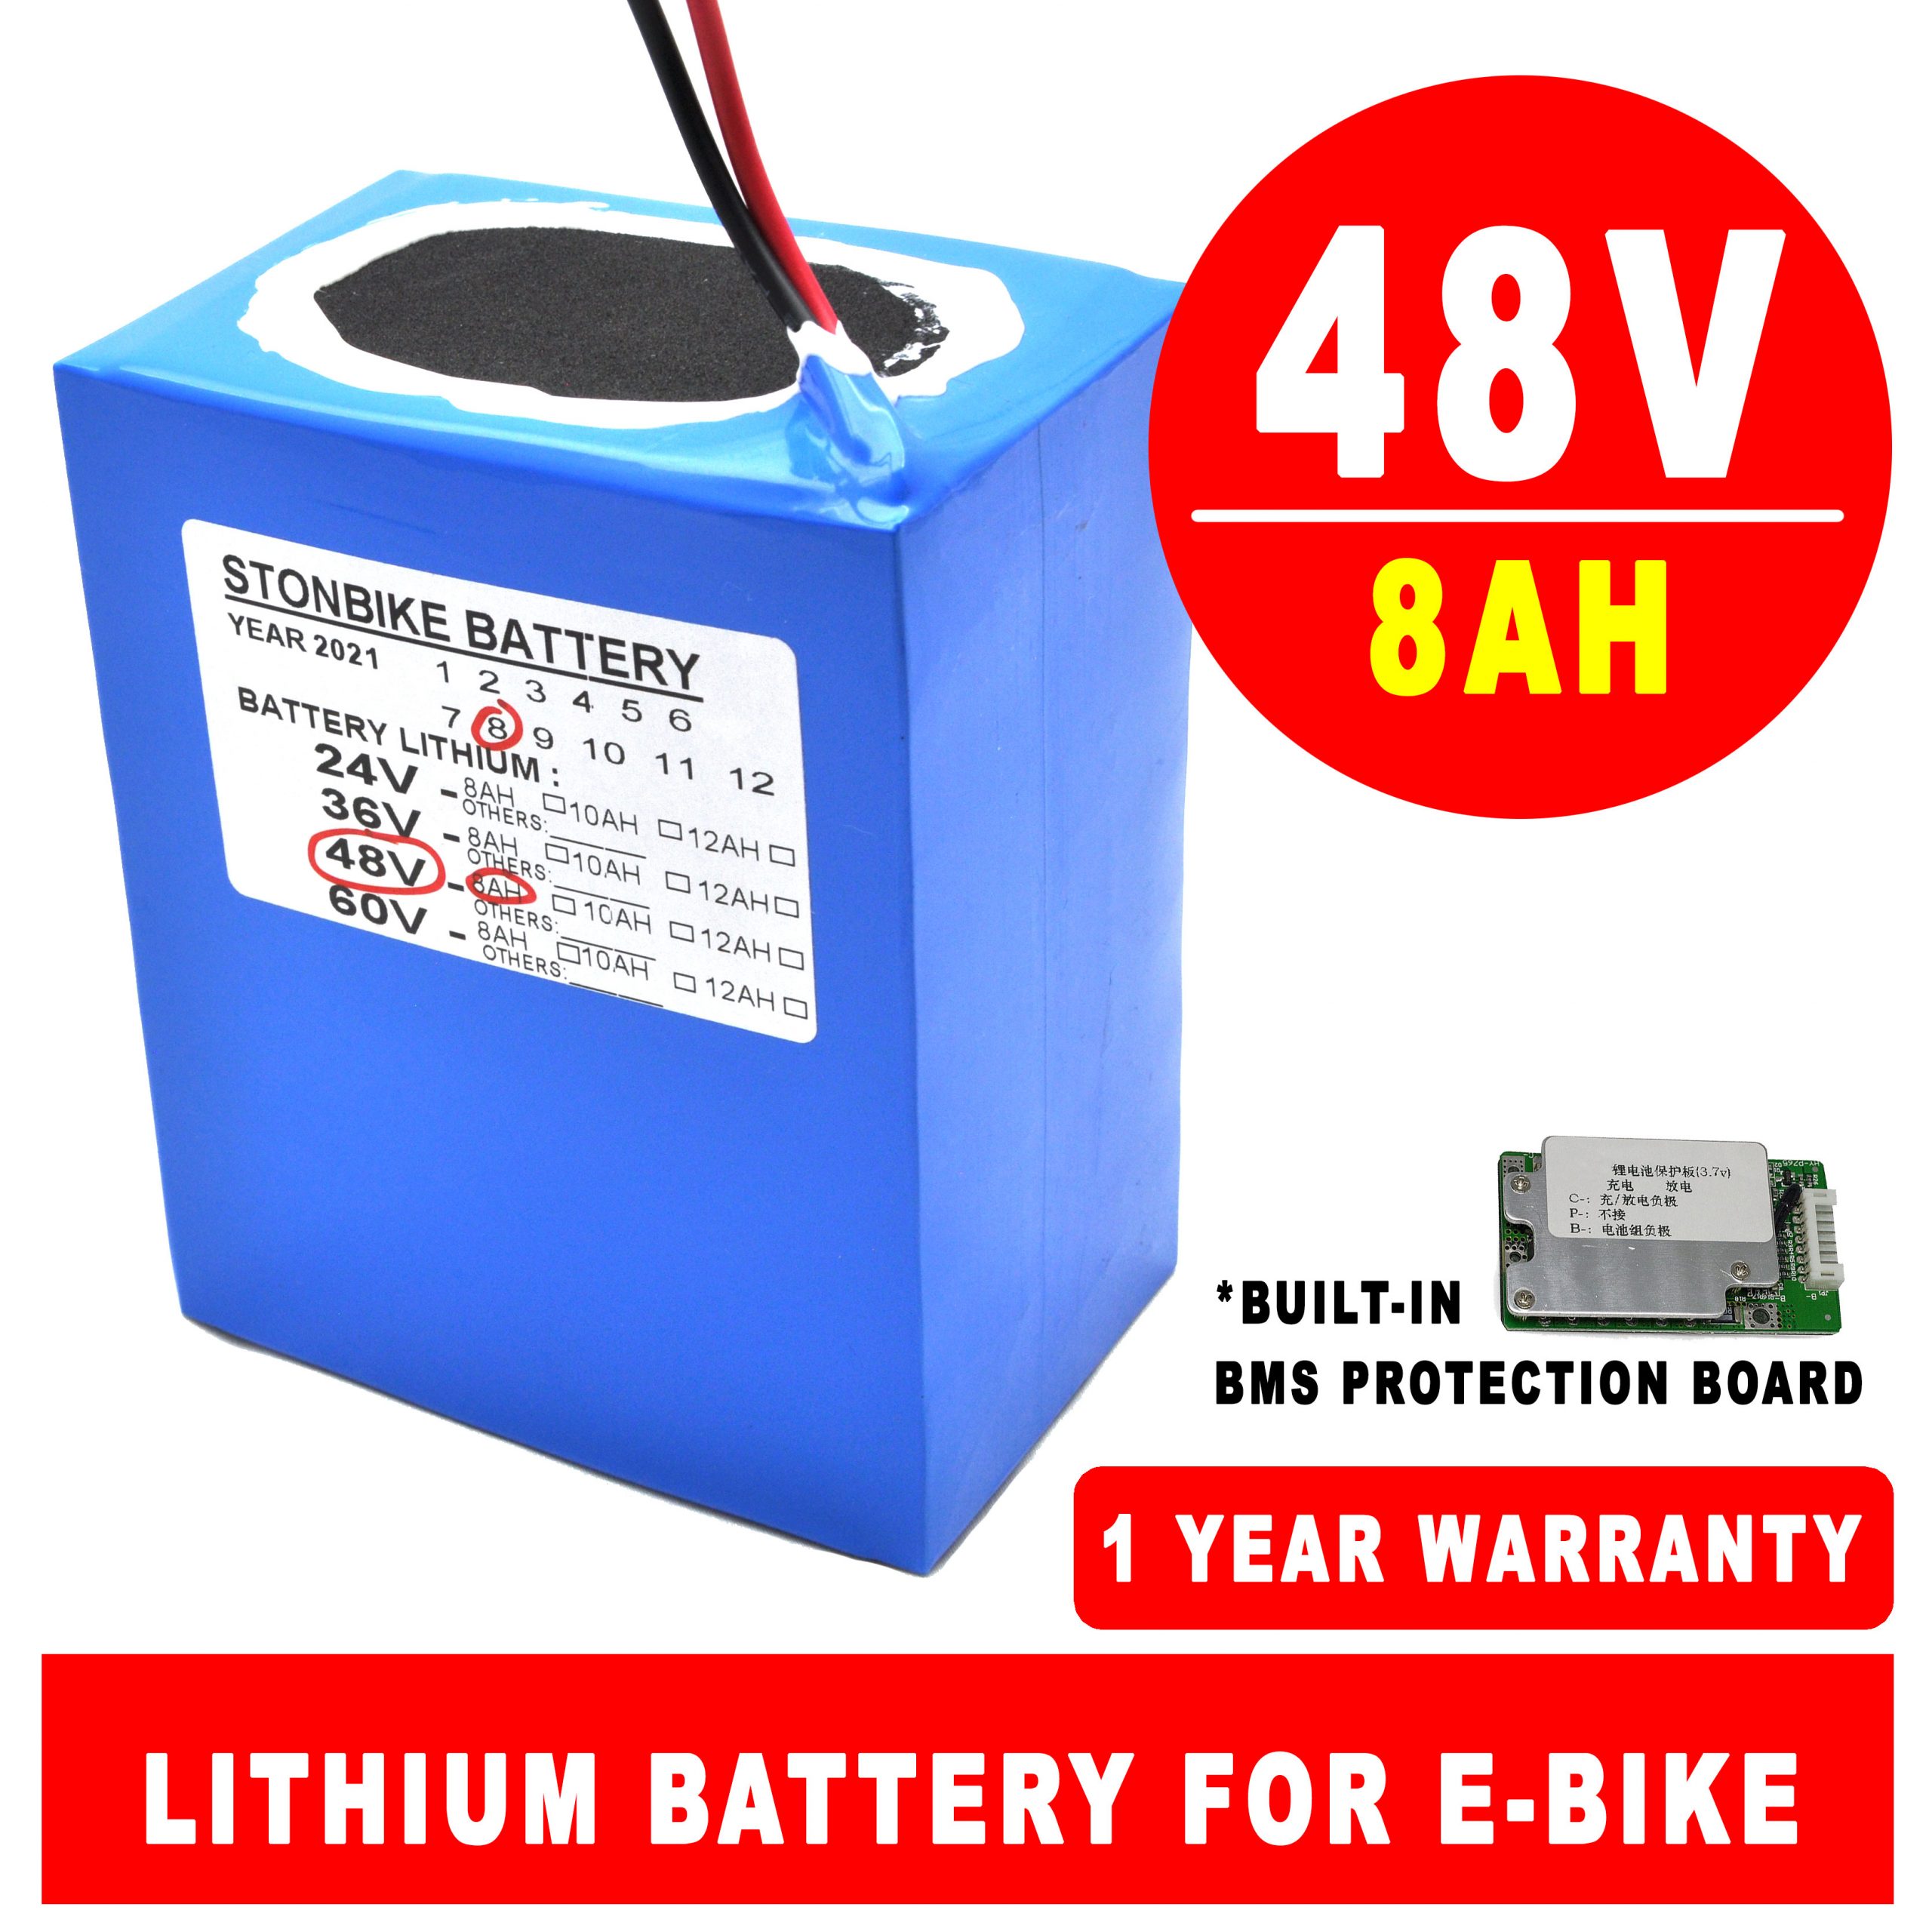 48V 8AH Lithium Battery Pack